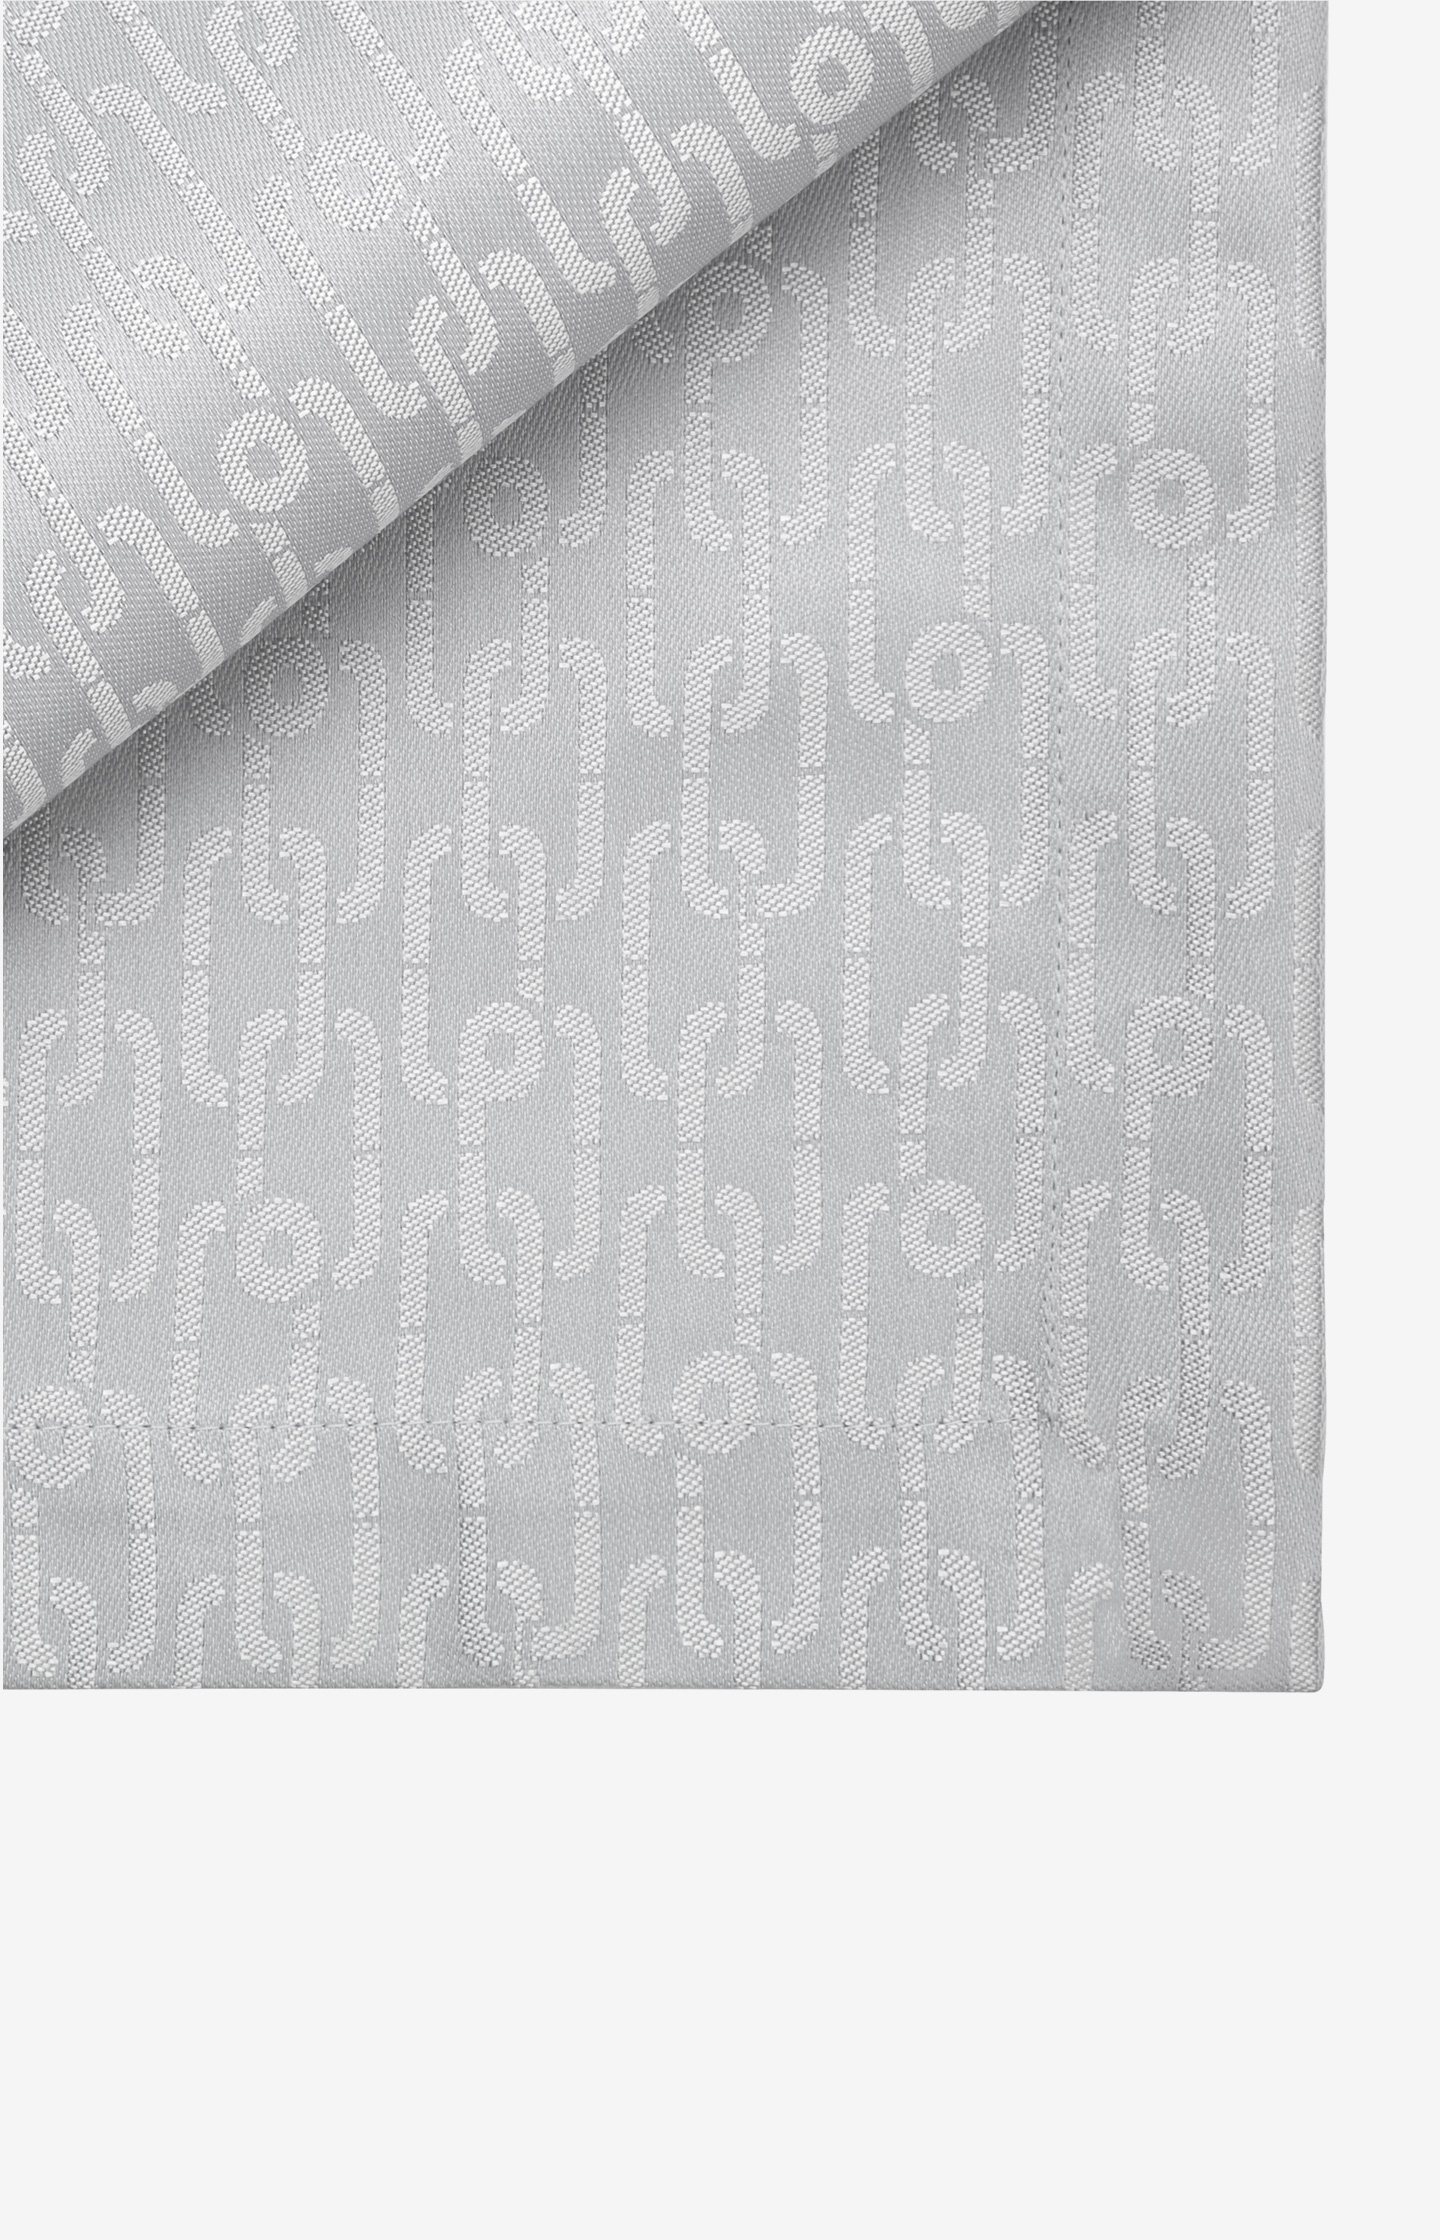 Tischdecke JOOP! CHAINS ALLOVER in Silber, 140 x 210 cm - im JOOP!  Online-Shop